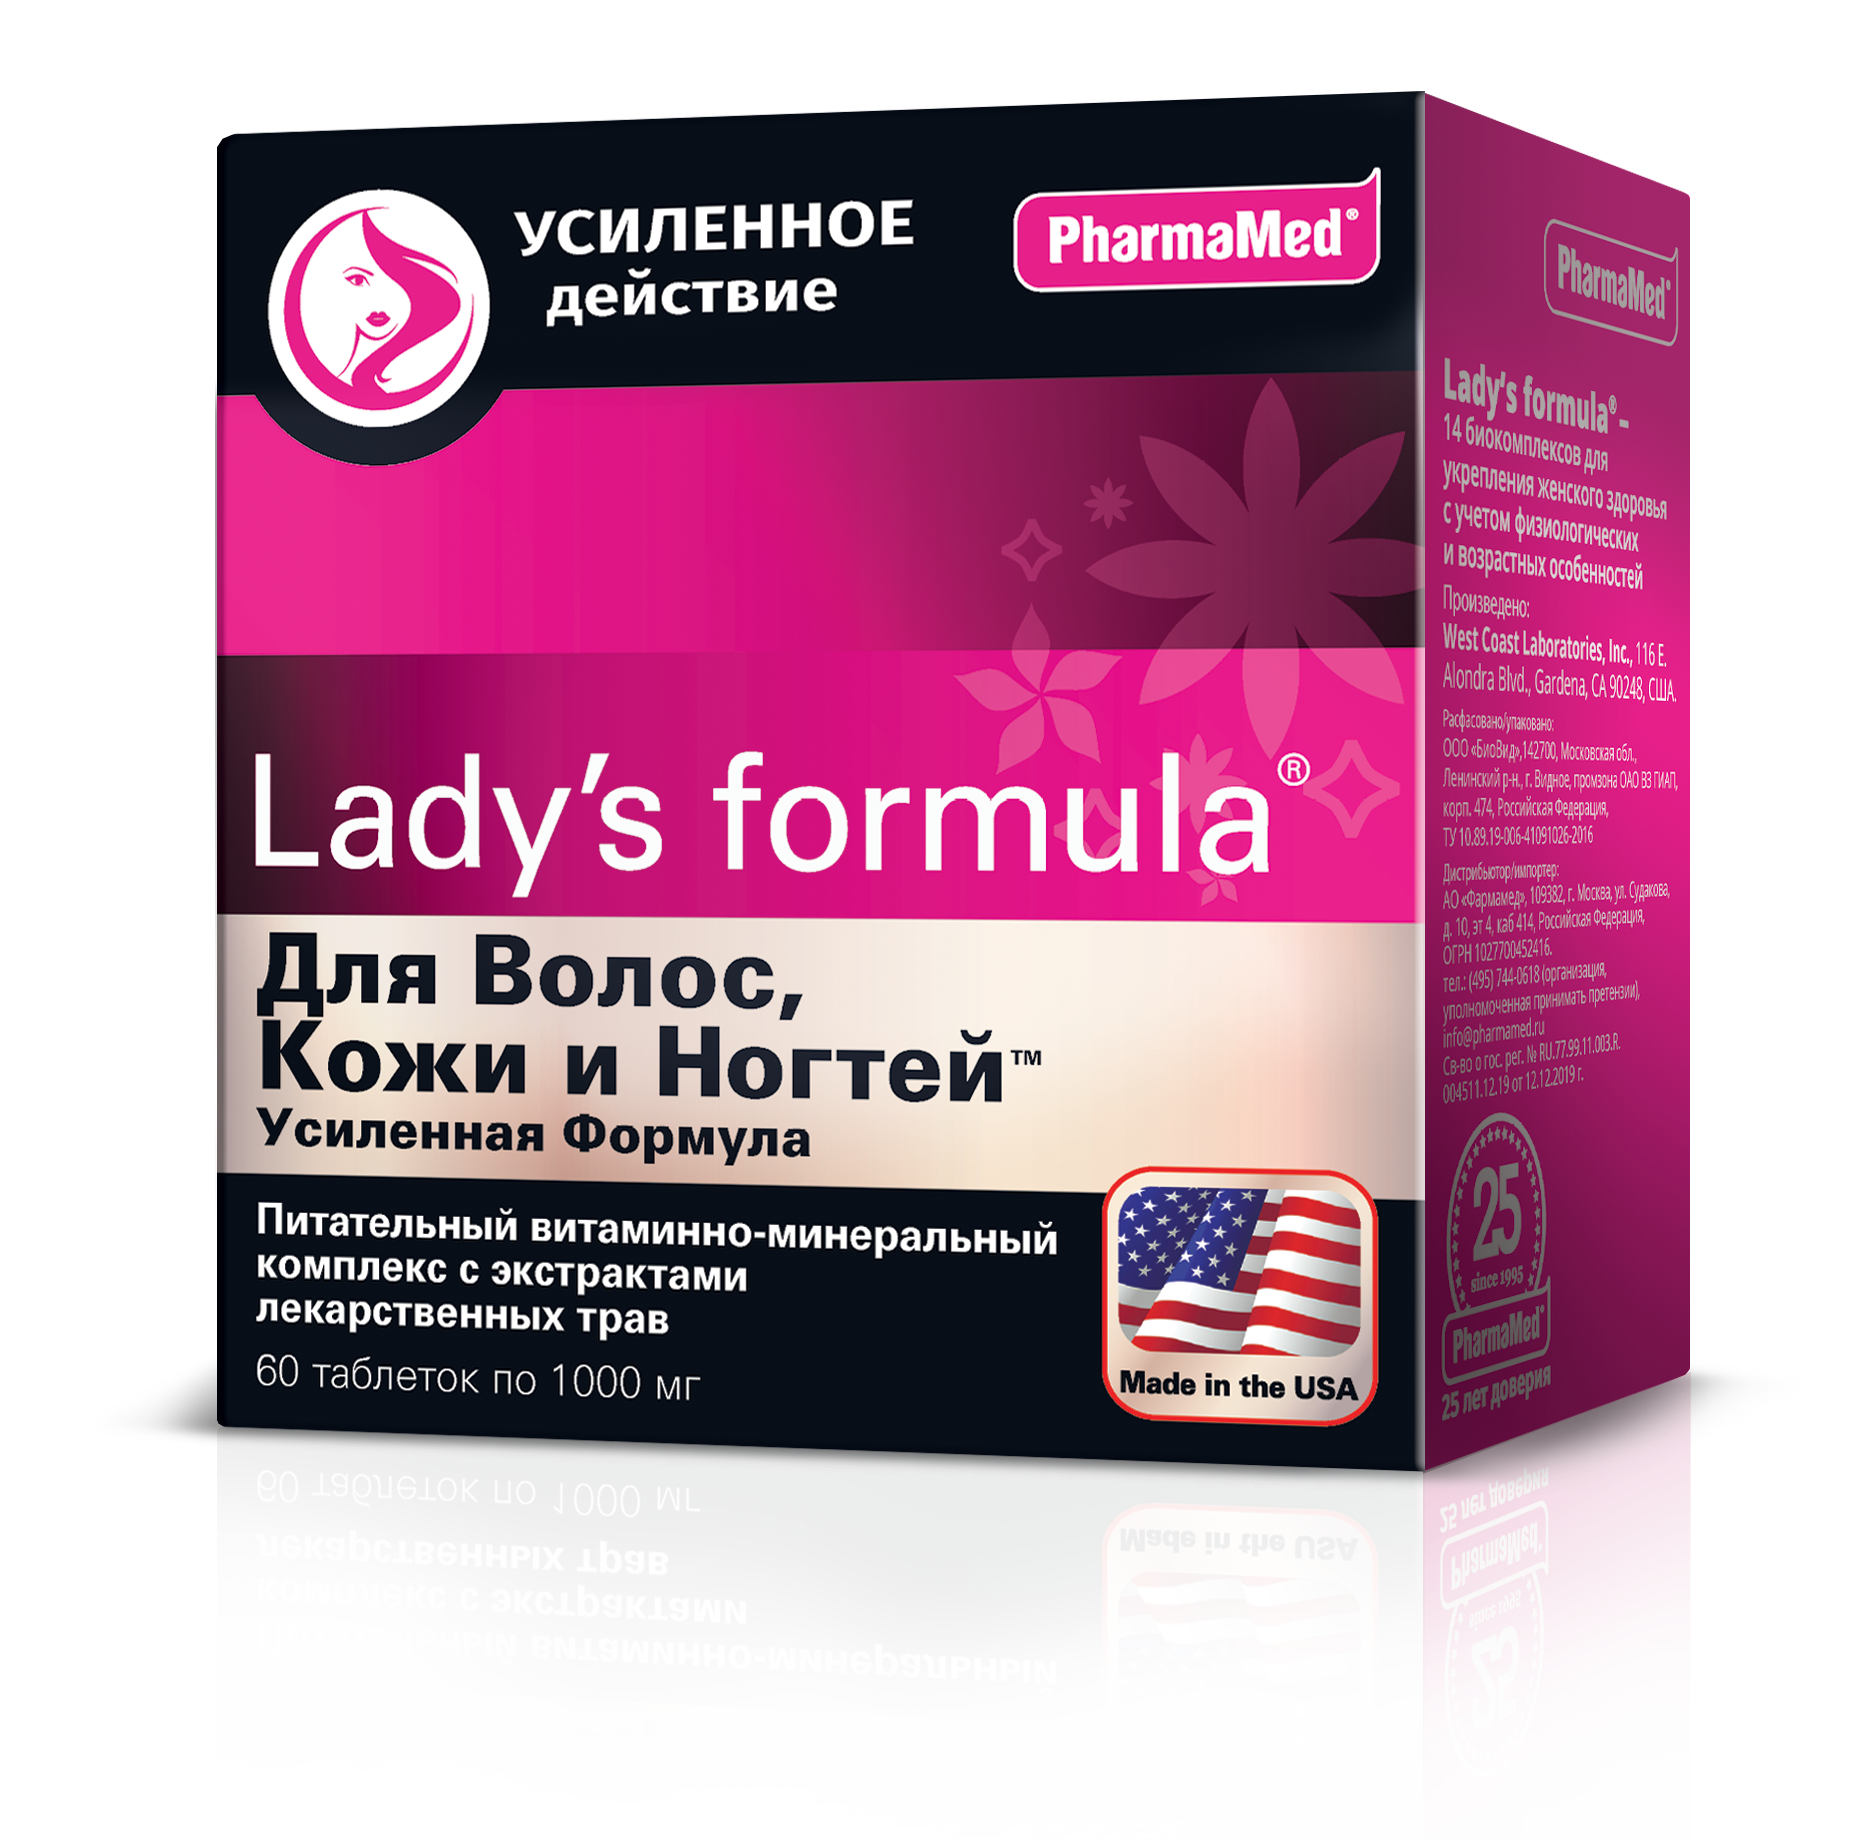 Lady's formula Для волос, кожи и ногтей Усиленная формула, таблетки 1000 мг, 60 шт.